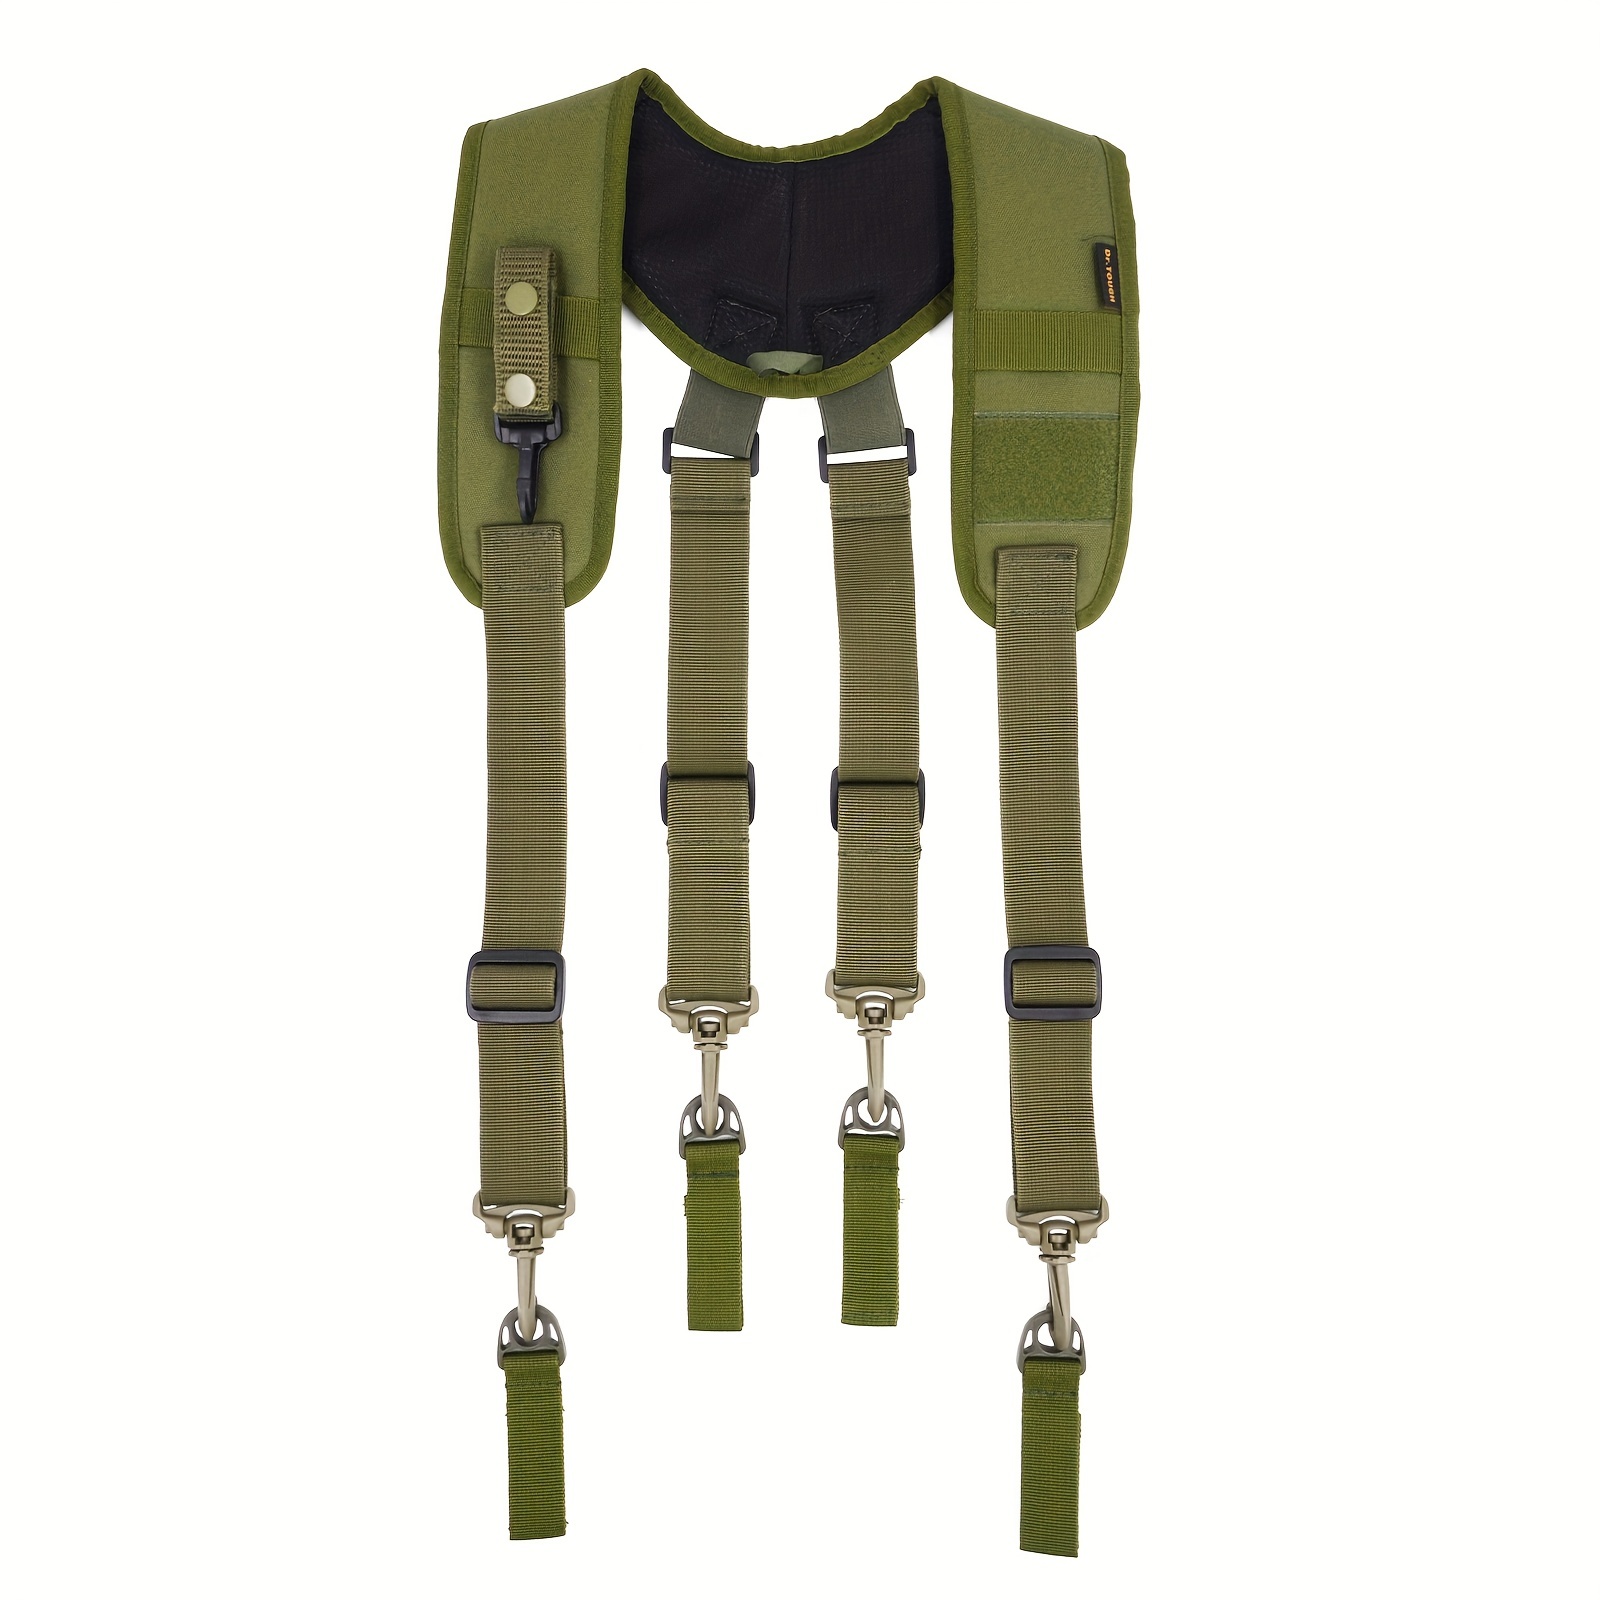 H-harness Duty Belt Suspenders, Tactical Duty Belt Suspenders